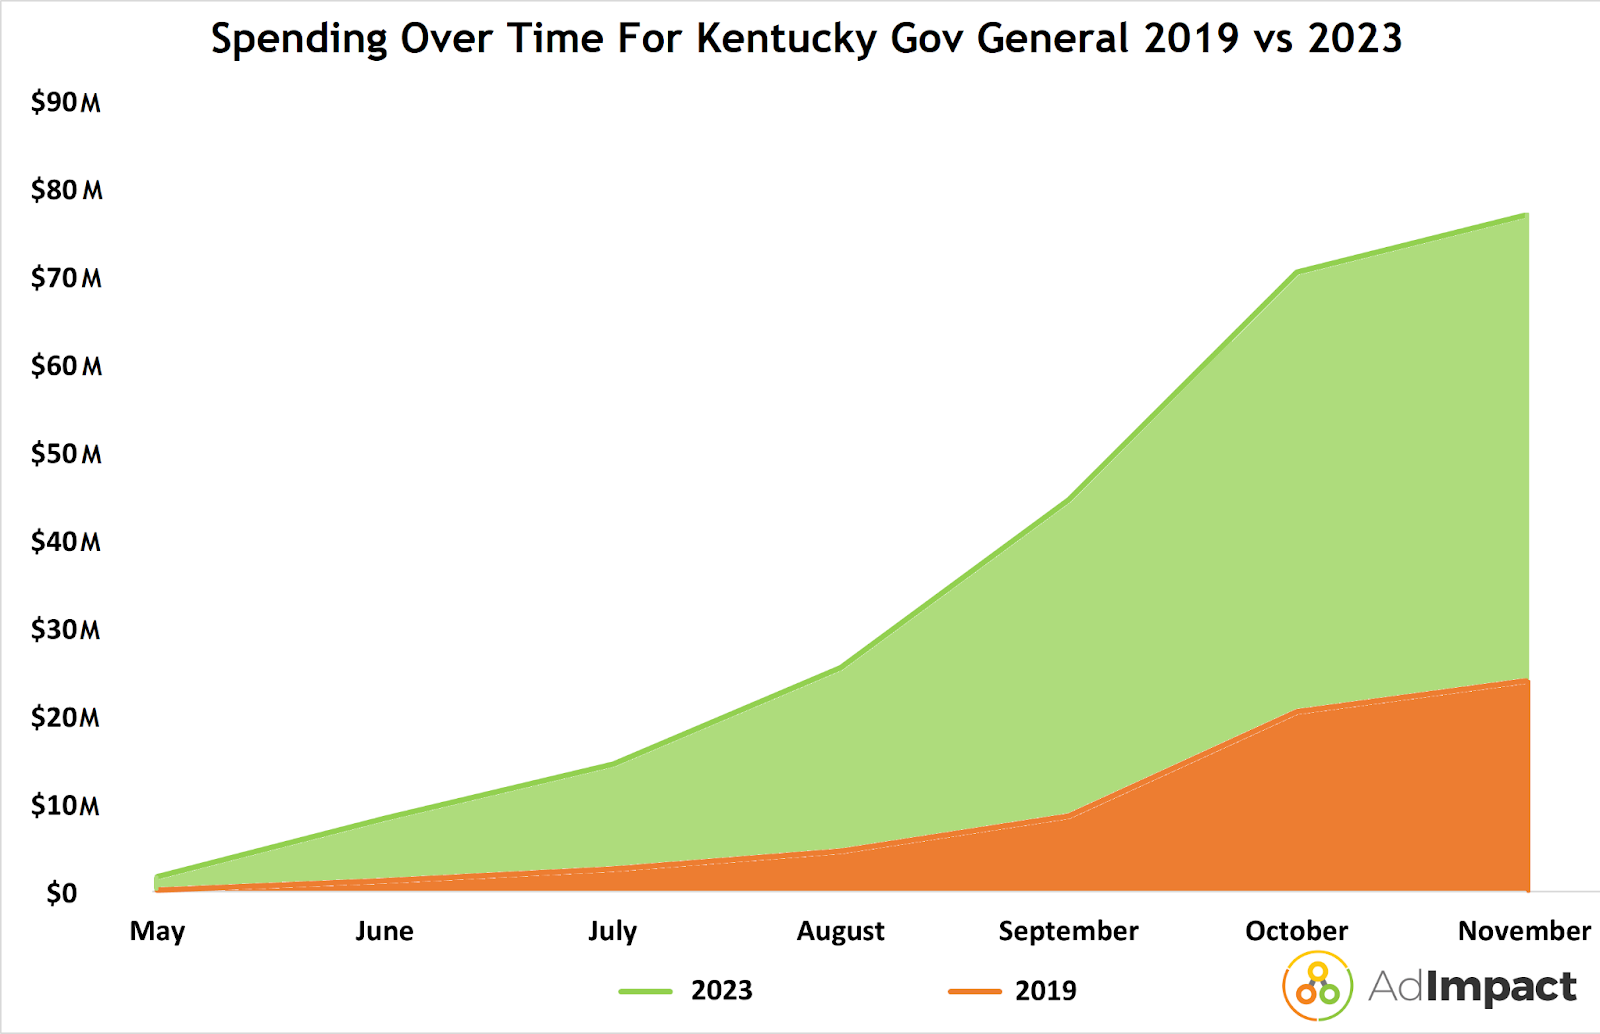 An area chart showing Kentucky gubernatorial spending